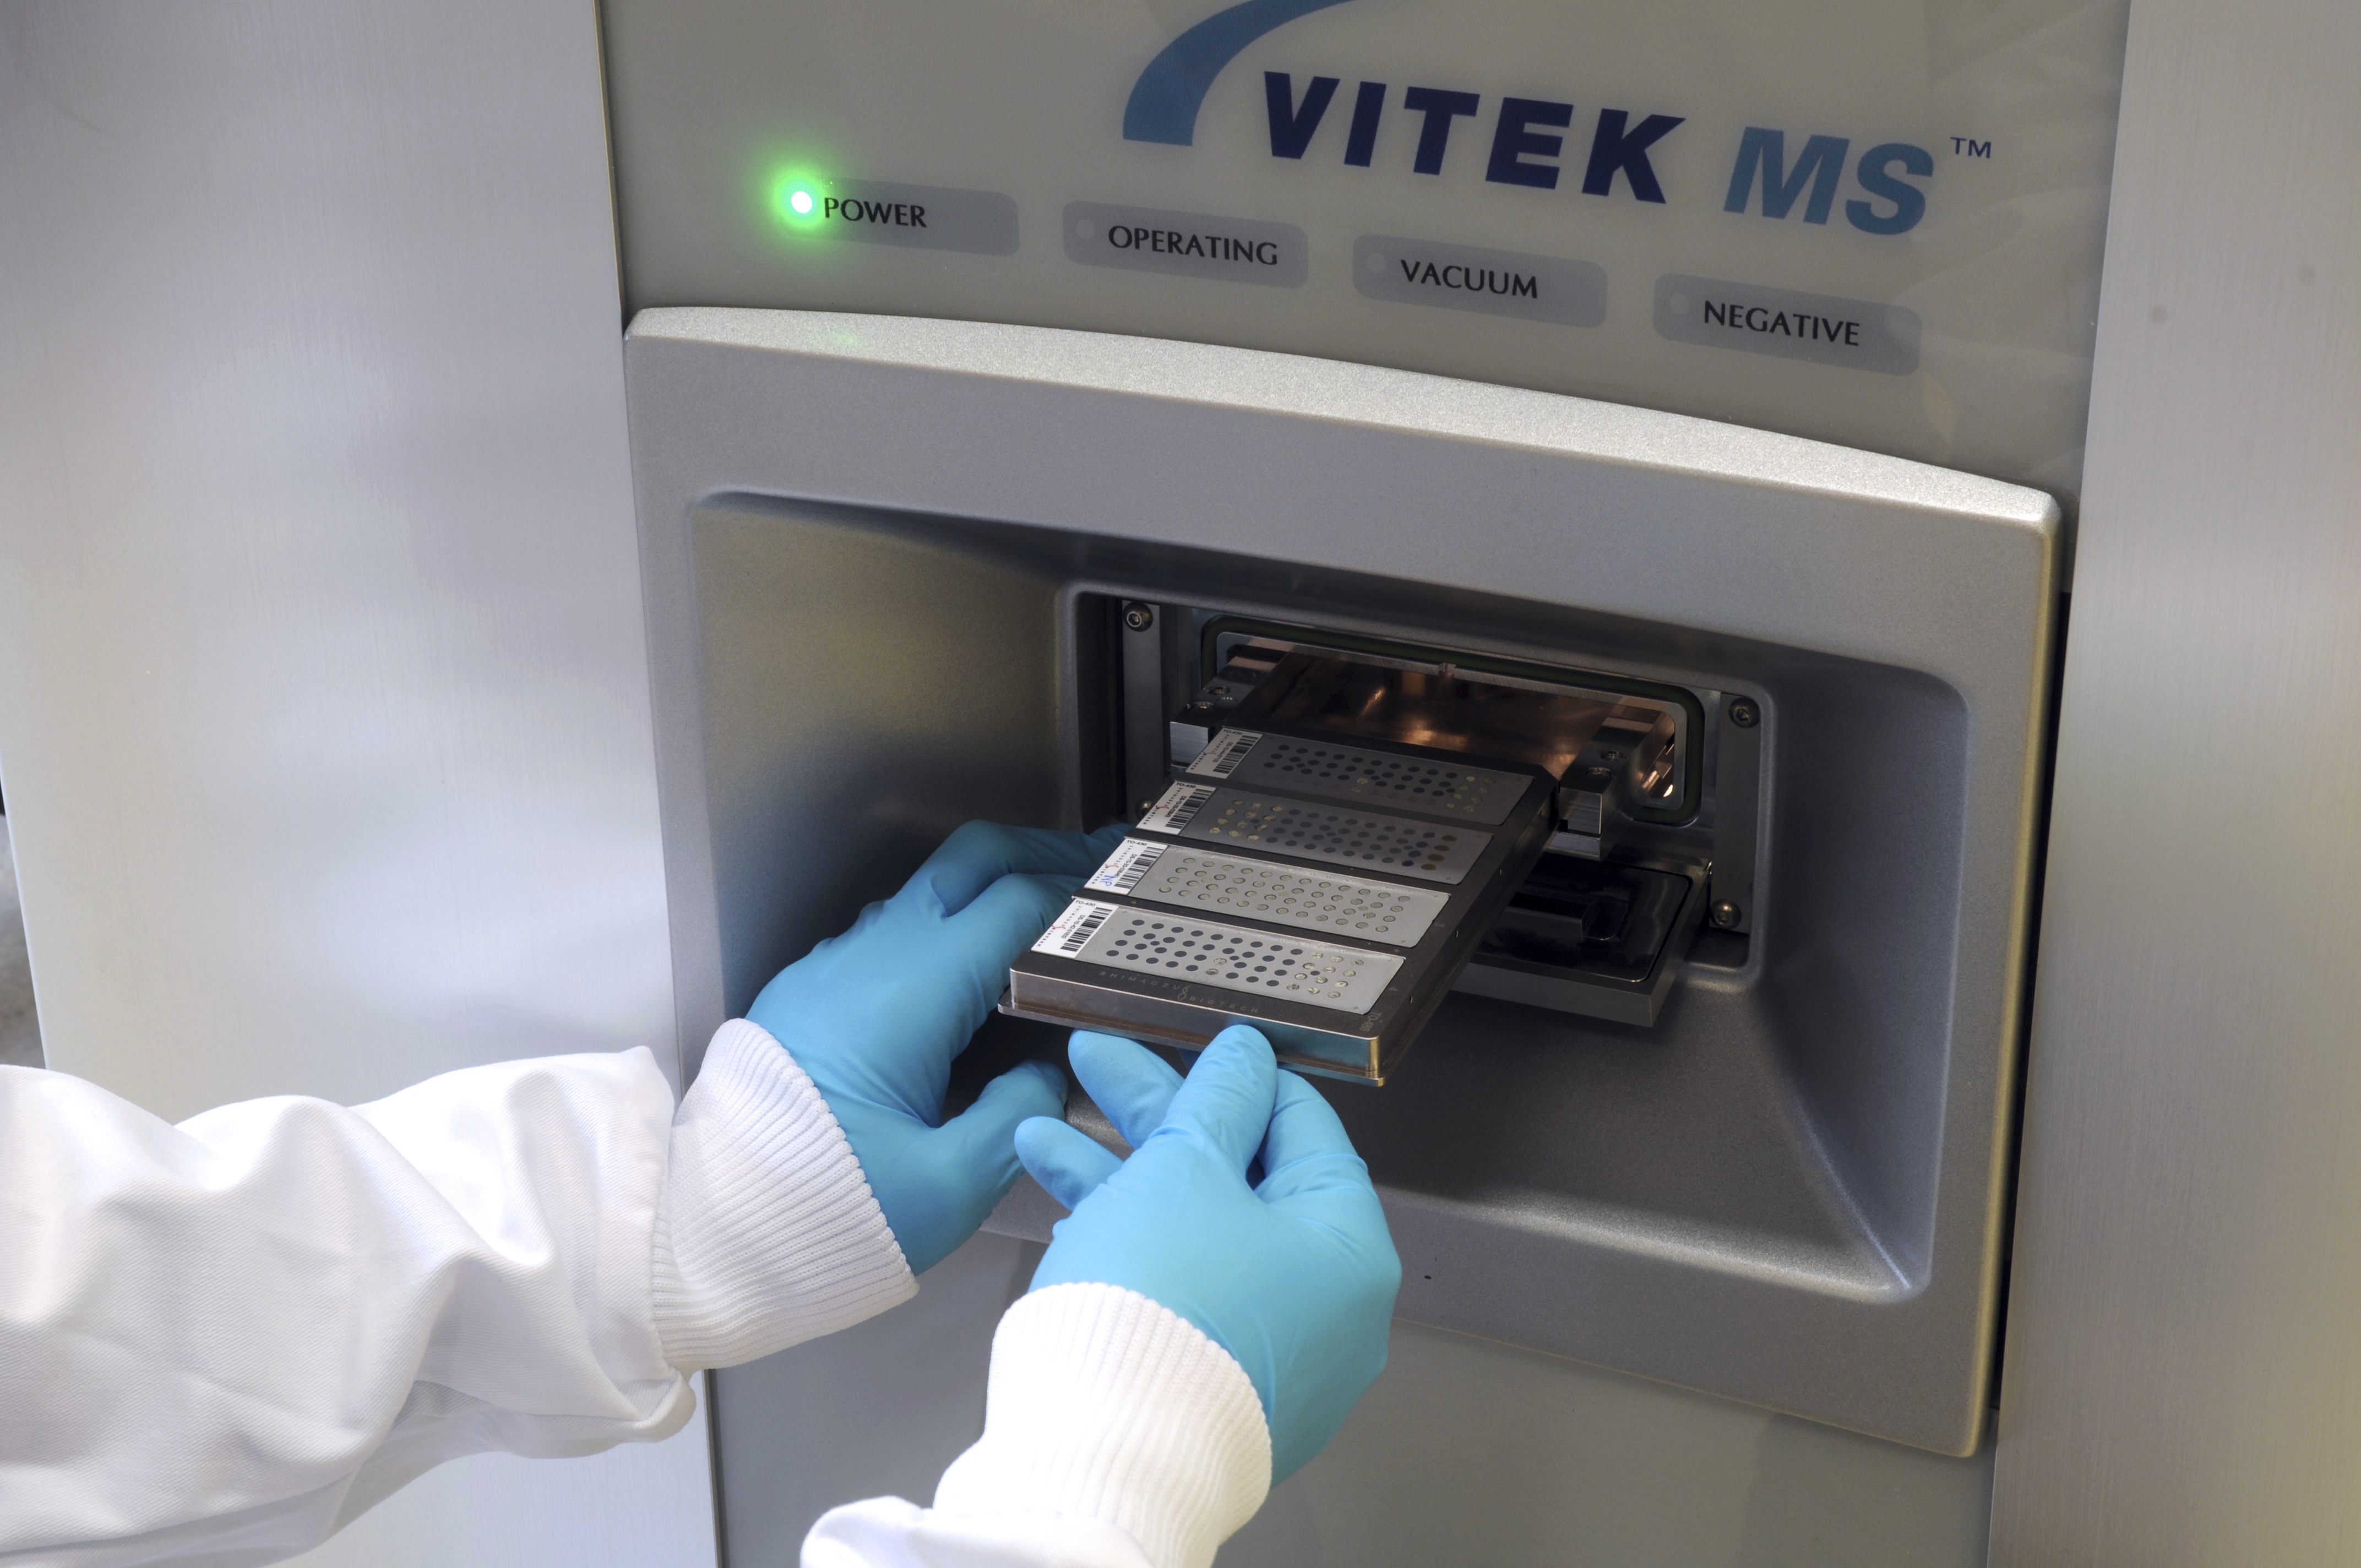 ΟΜΙΛΟΣ ΥΓΕΙΑ: Αποτελέσματα μικροβιολογικών εξετάσεων σε λίγα λεπτά  με το σύστημα VITEK MS